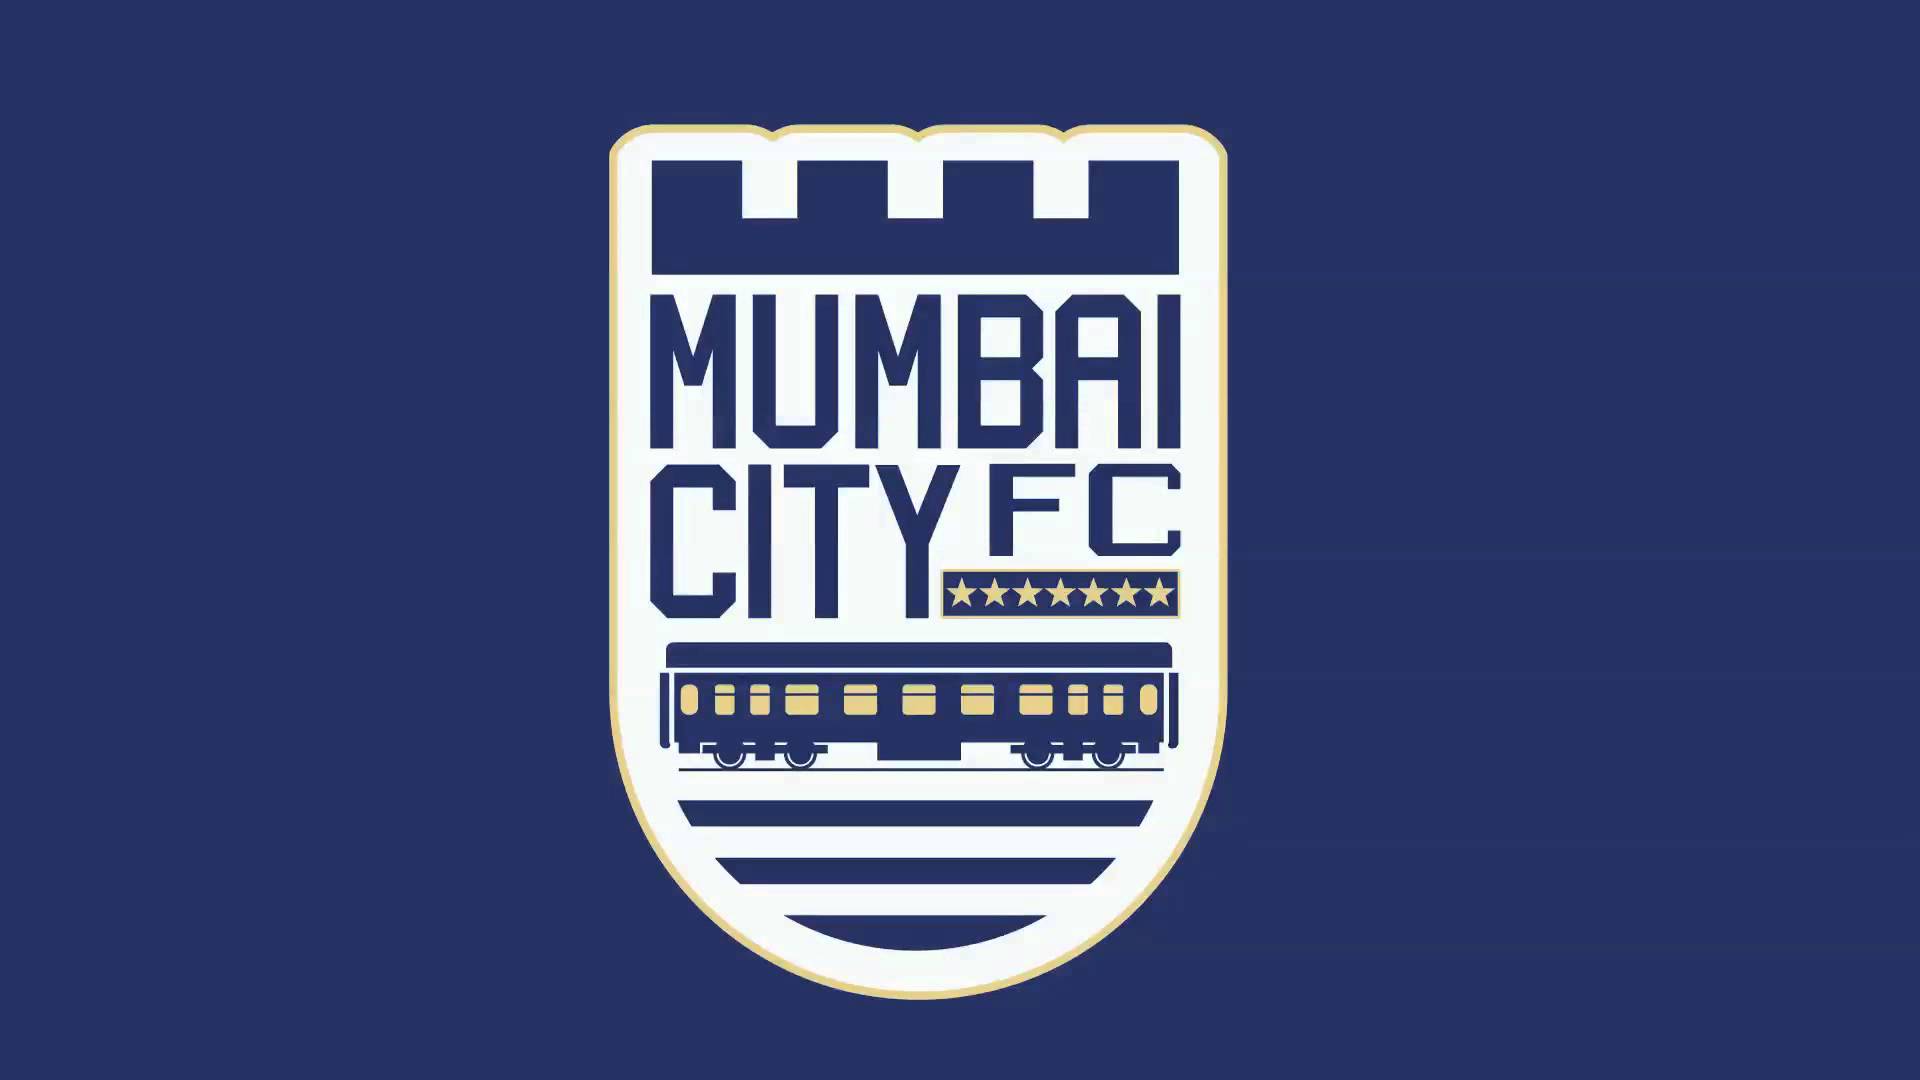 Mumbai City signed deal with Saigu of Senegal